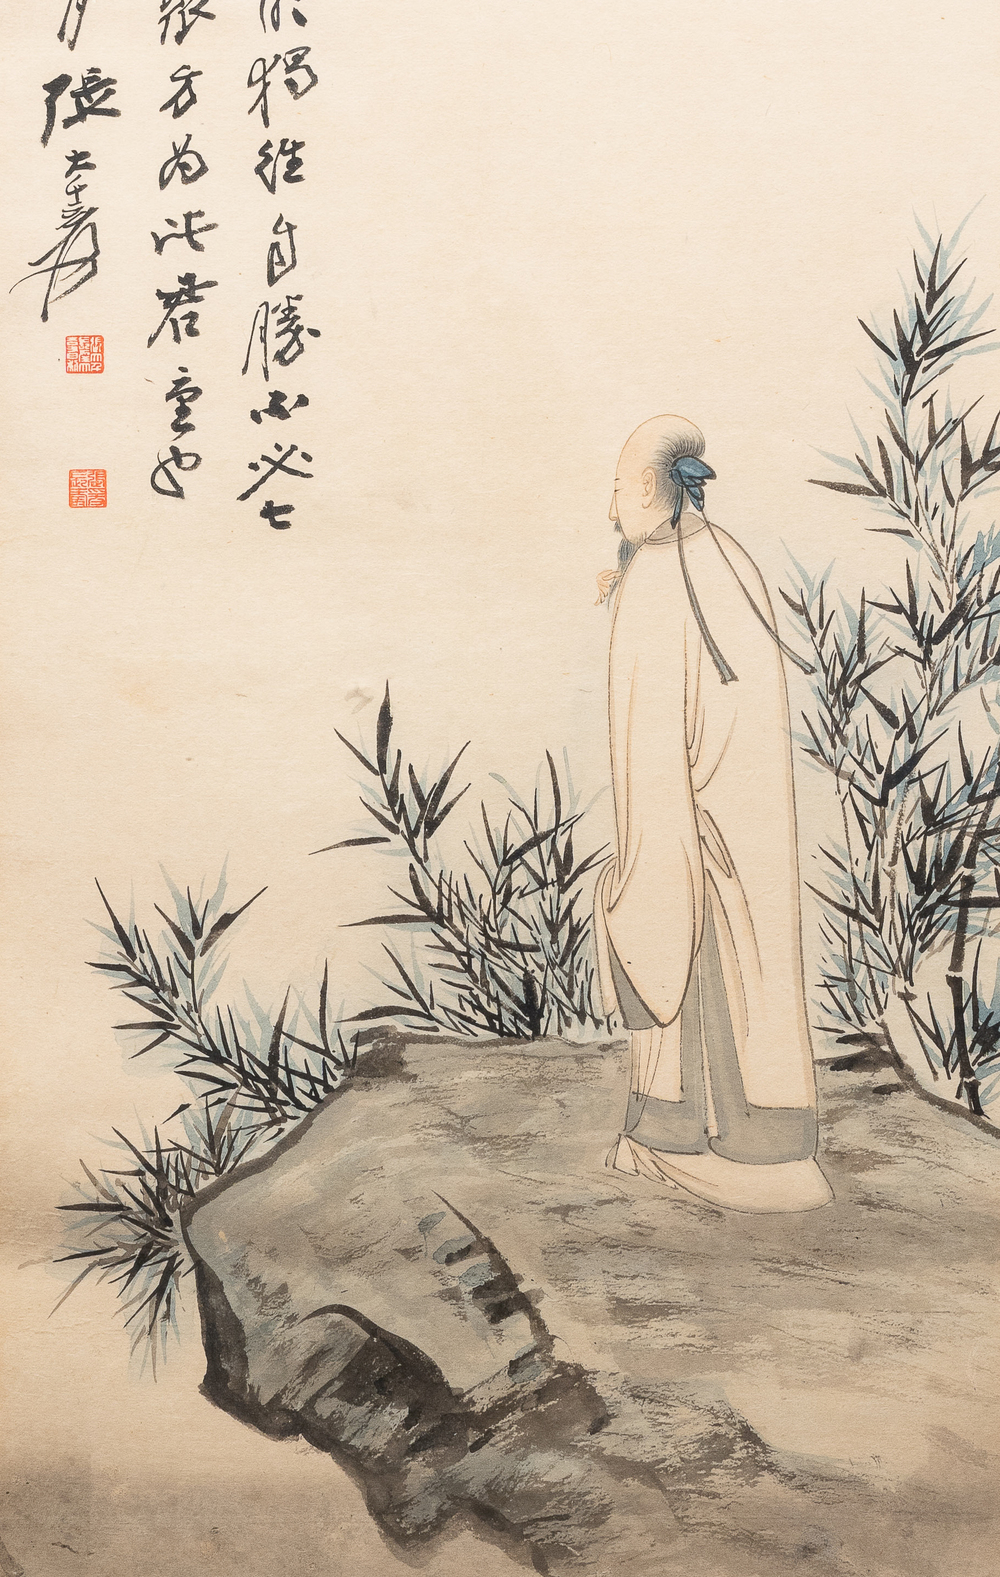 Zhang Daqian (1899-1983), encre et couleurs sur papier, dat&eacute; 1949: 'Parmi les bambous'